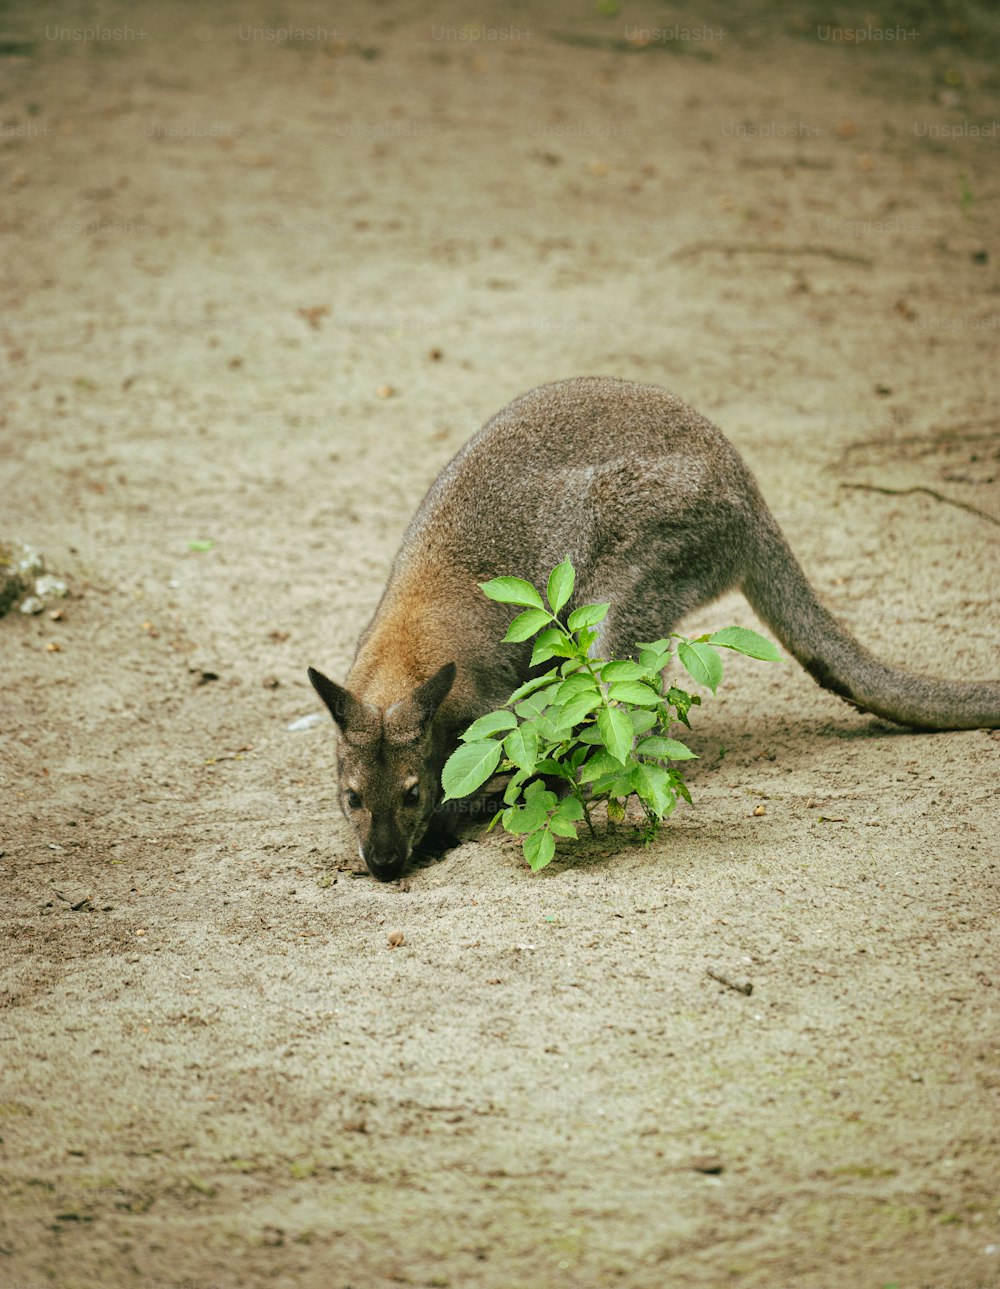 Un canguro comiendo una planta en la tierra